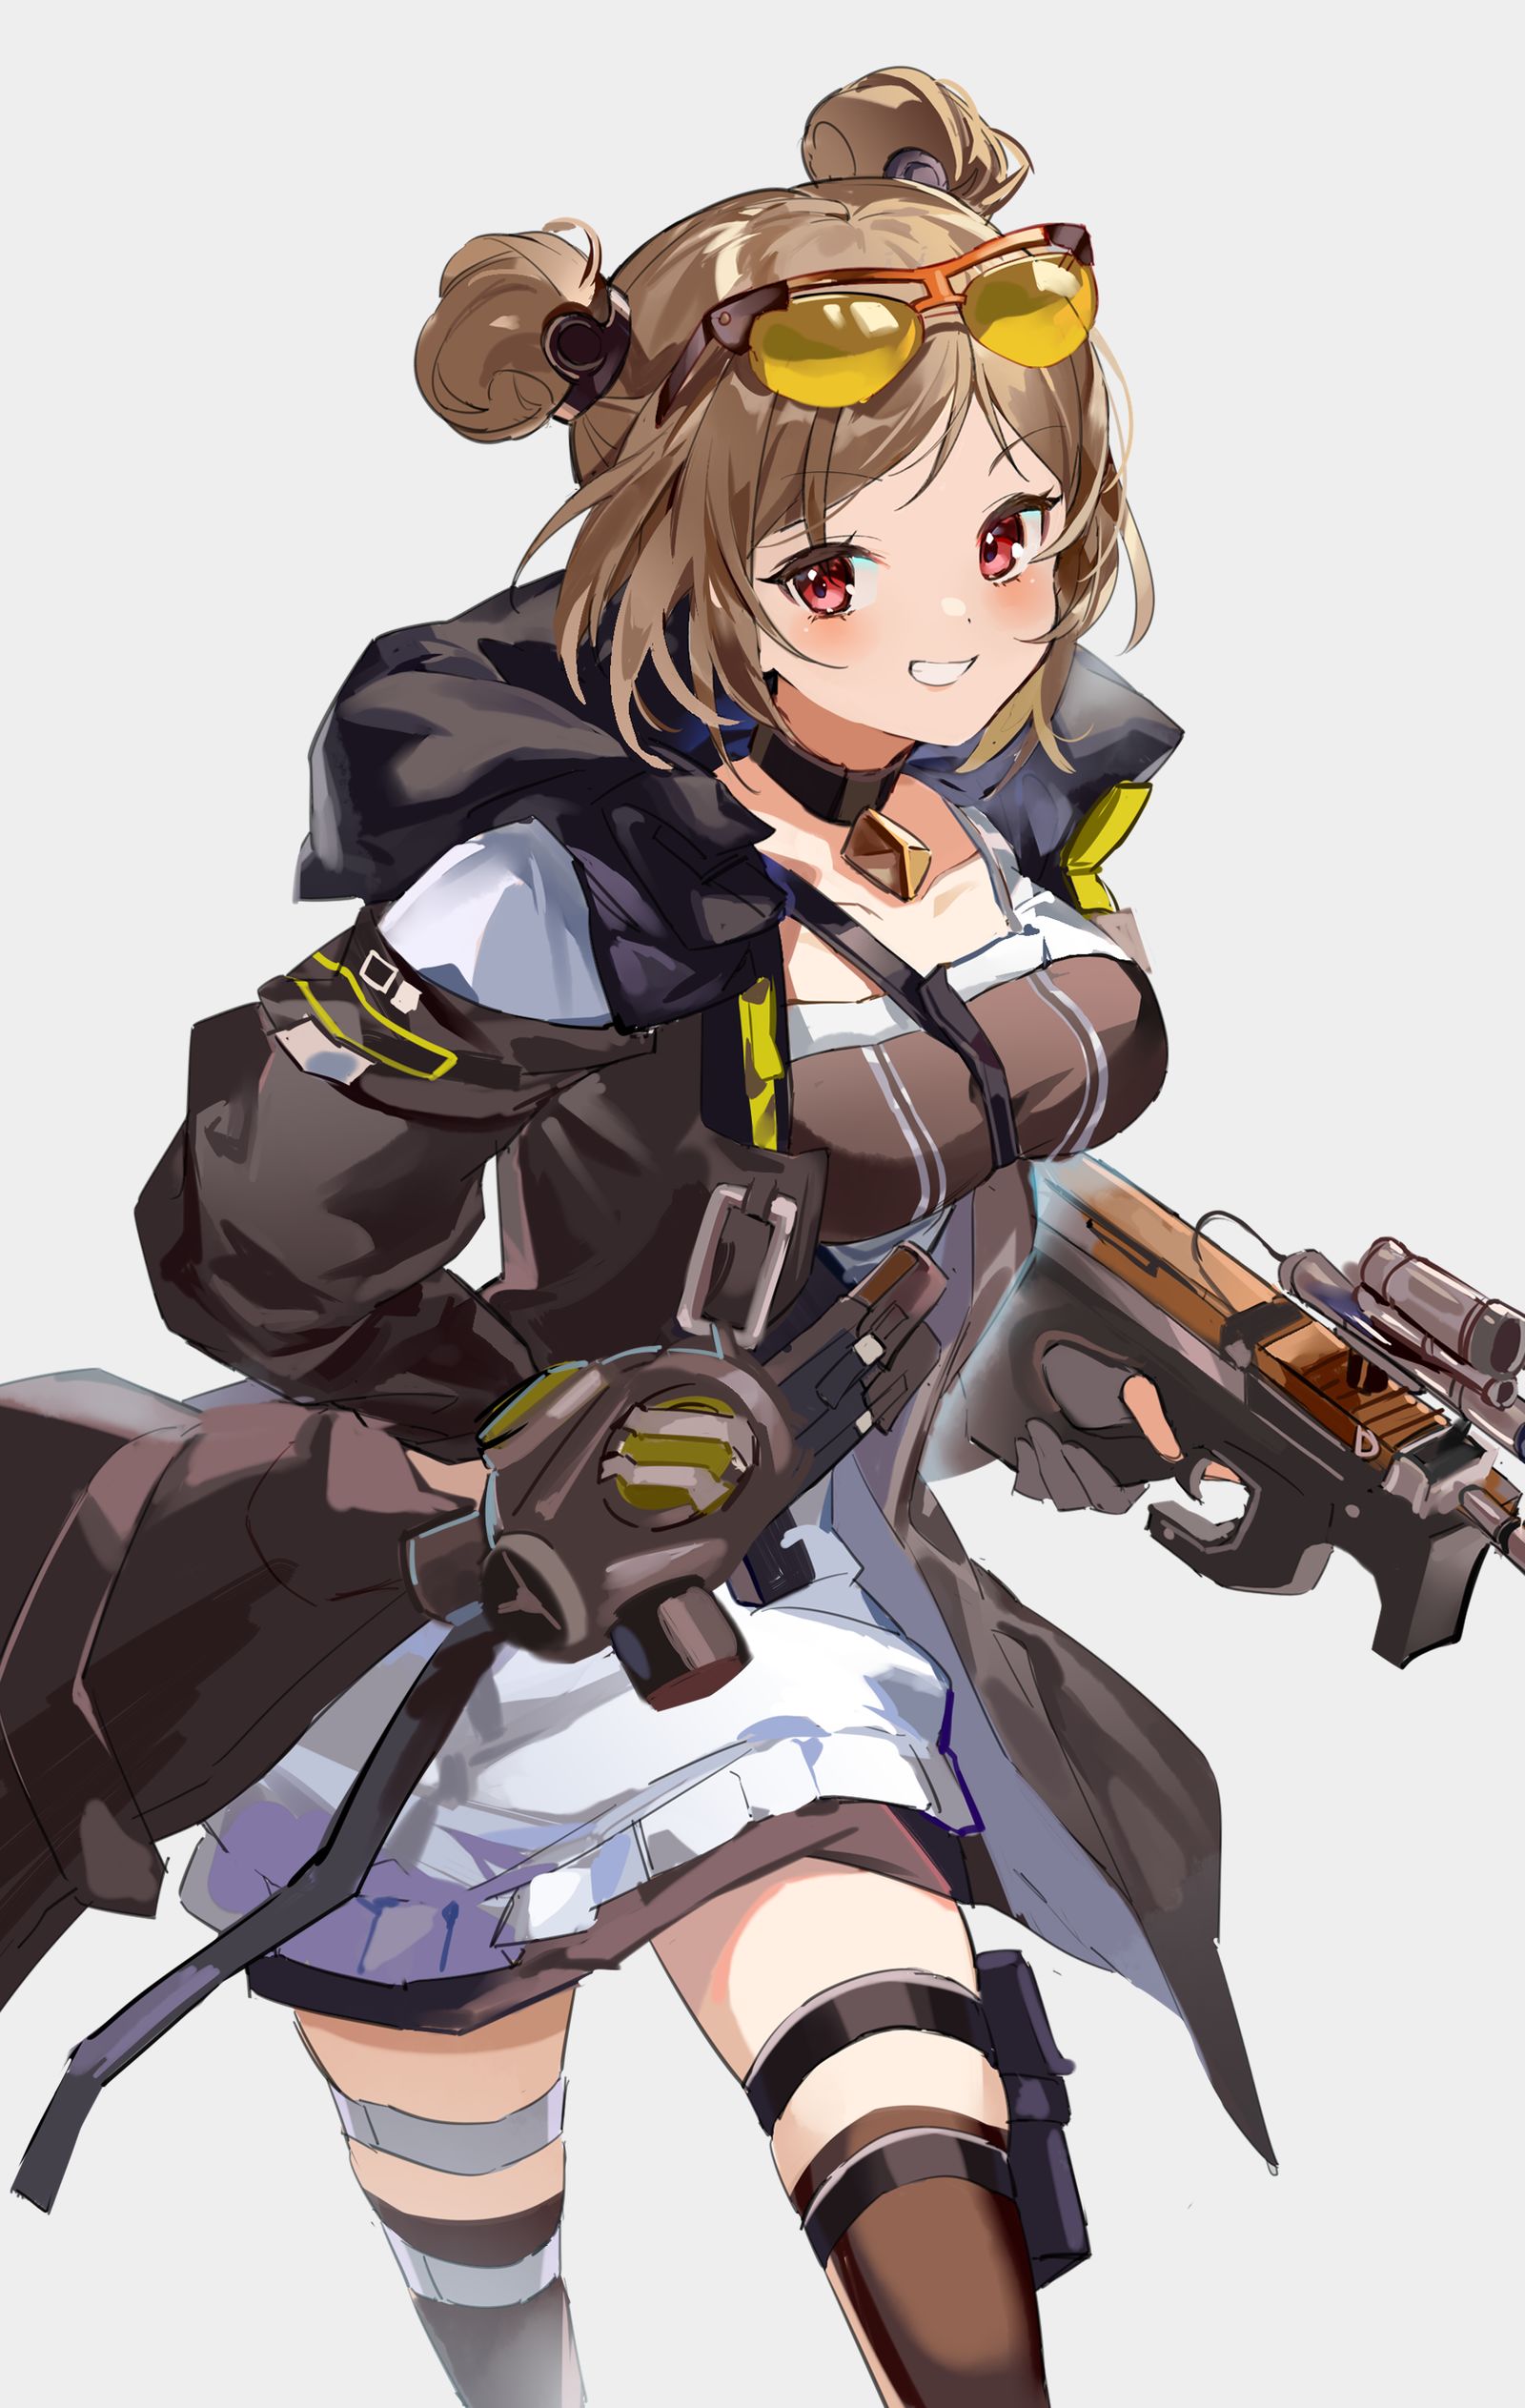 p90-少女前线P90銃を持った戦術人形